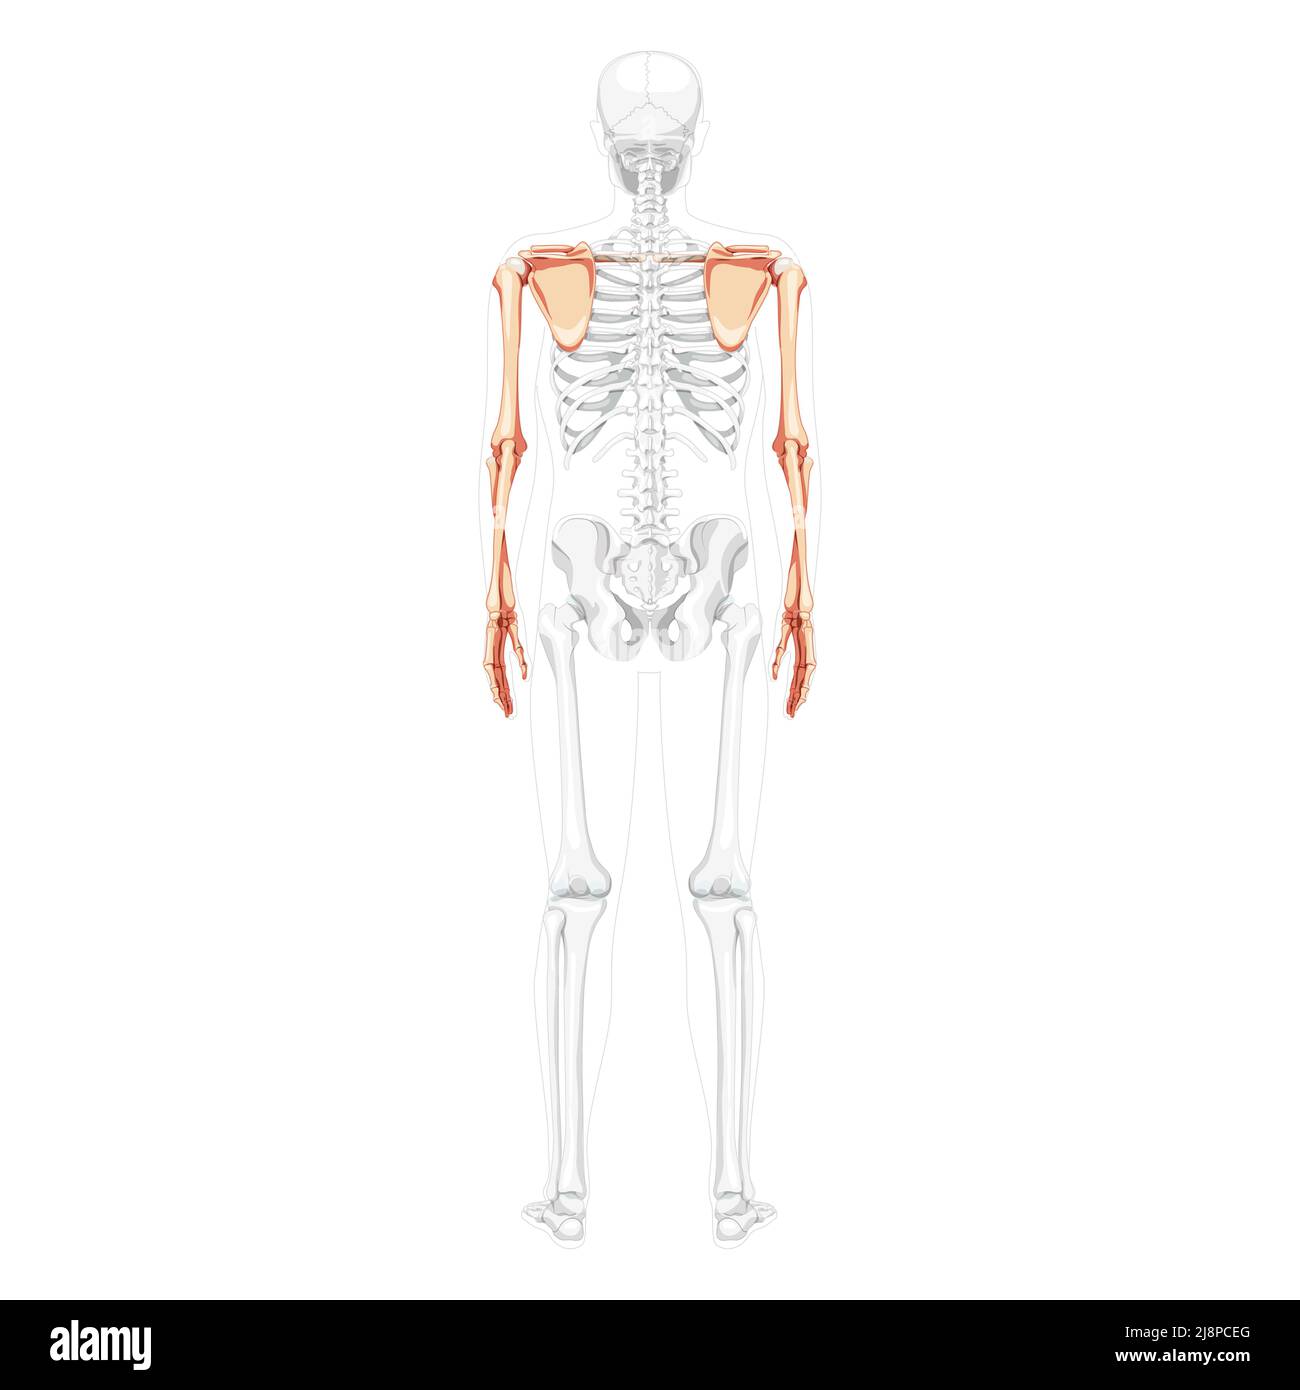 Skelett obere Extremitäten Arme mit Schultergurt menschliche Rückenansicht mit teilweise transparenter Knochenposition. Hände realistische flache natürliche Farbe Vektor-Darstellung der Anatomie isoliert auf weißem Hintergrund Stock Vektor